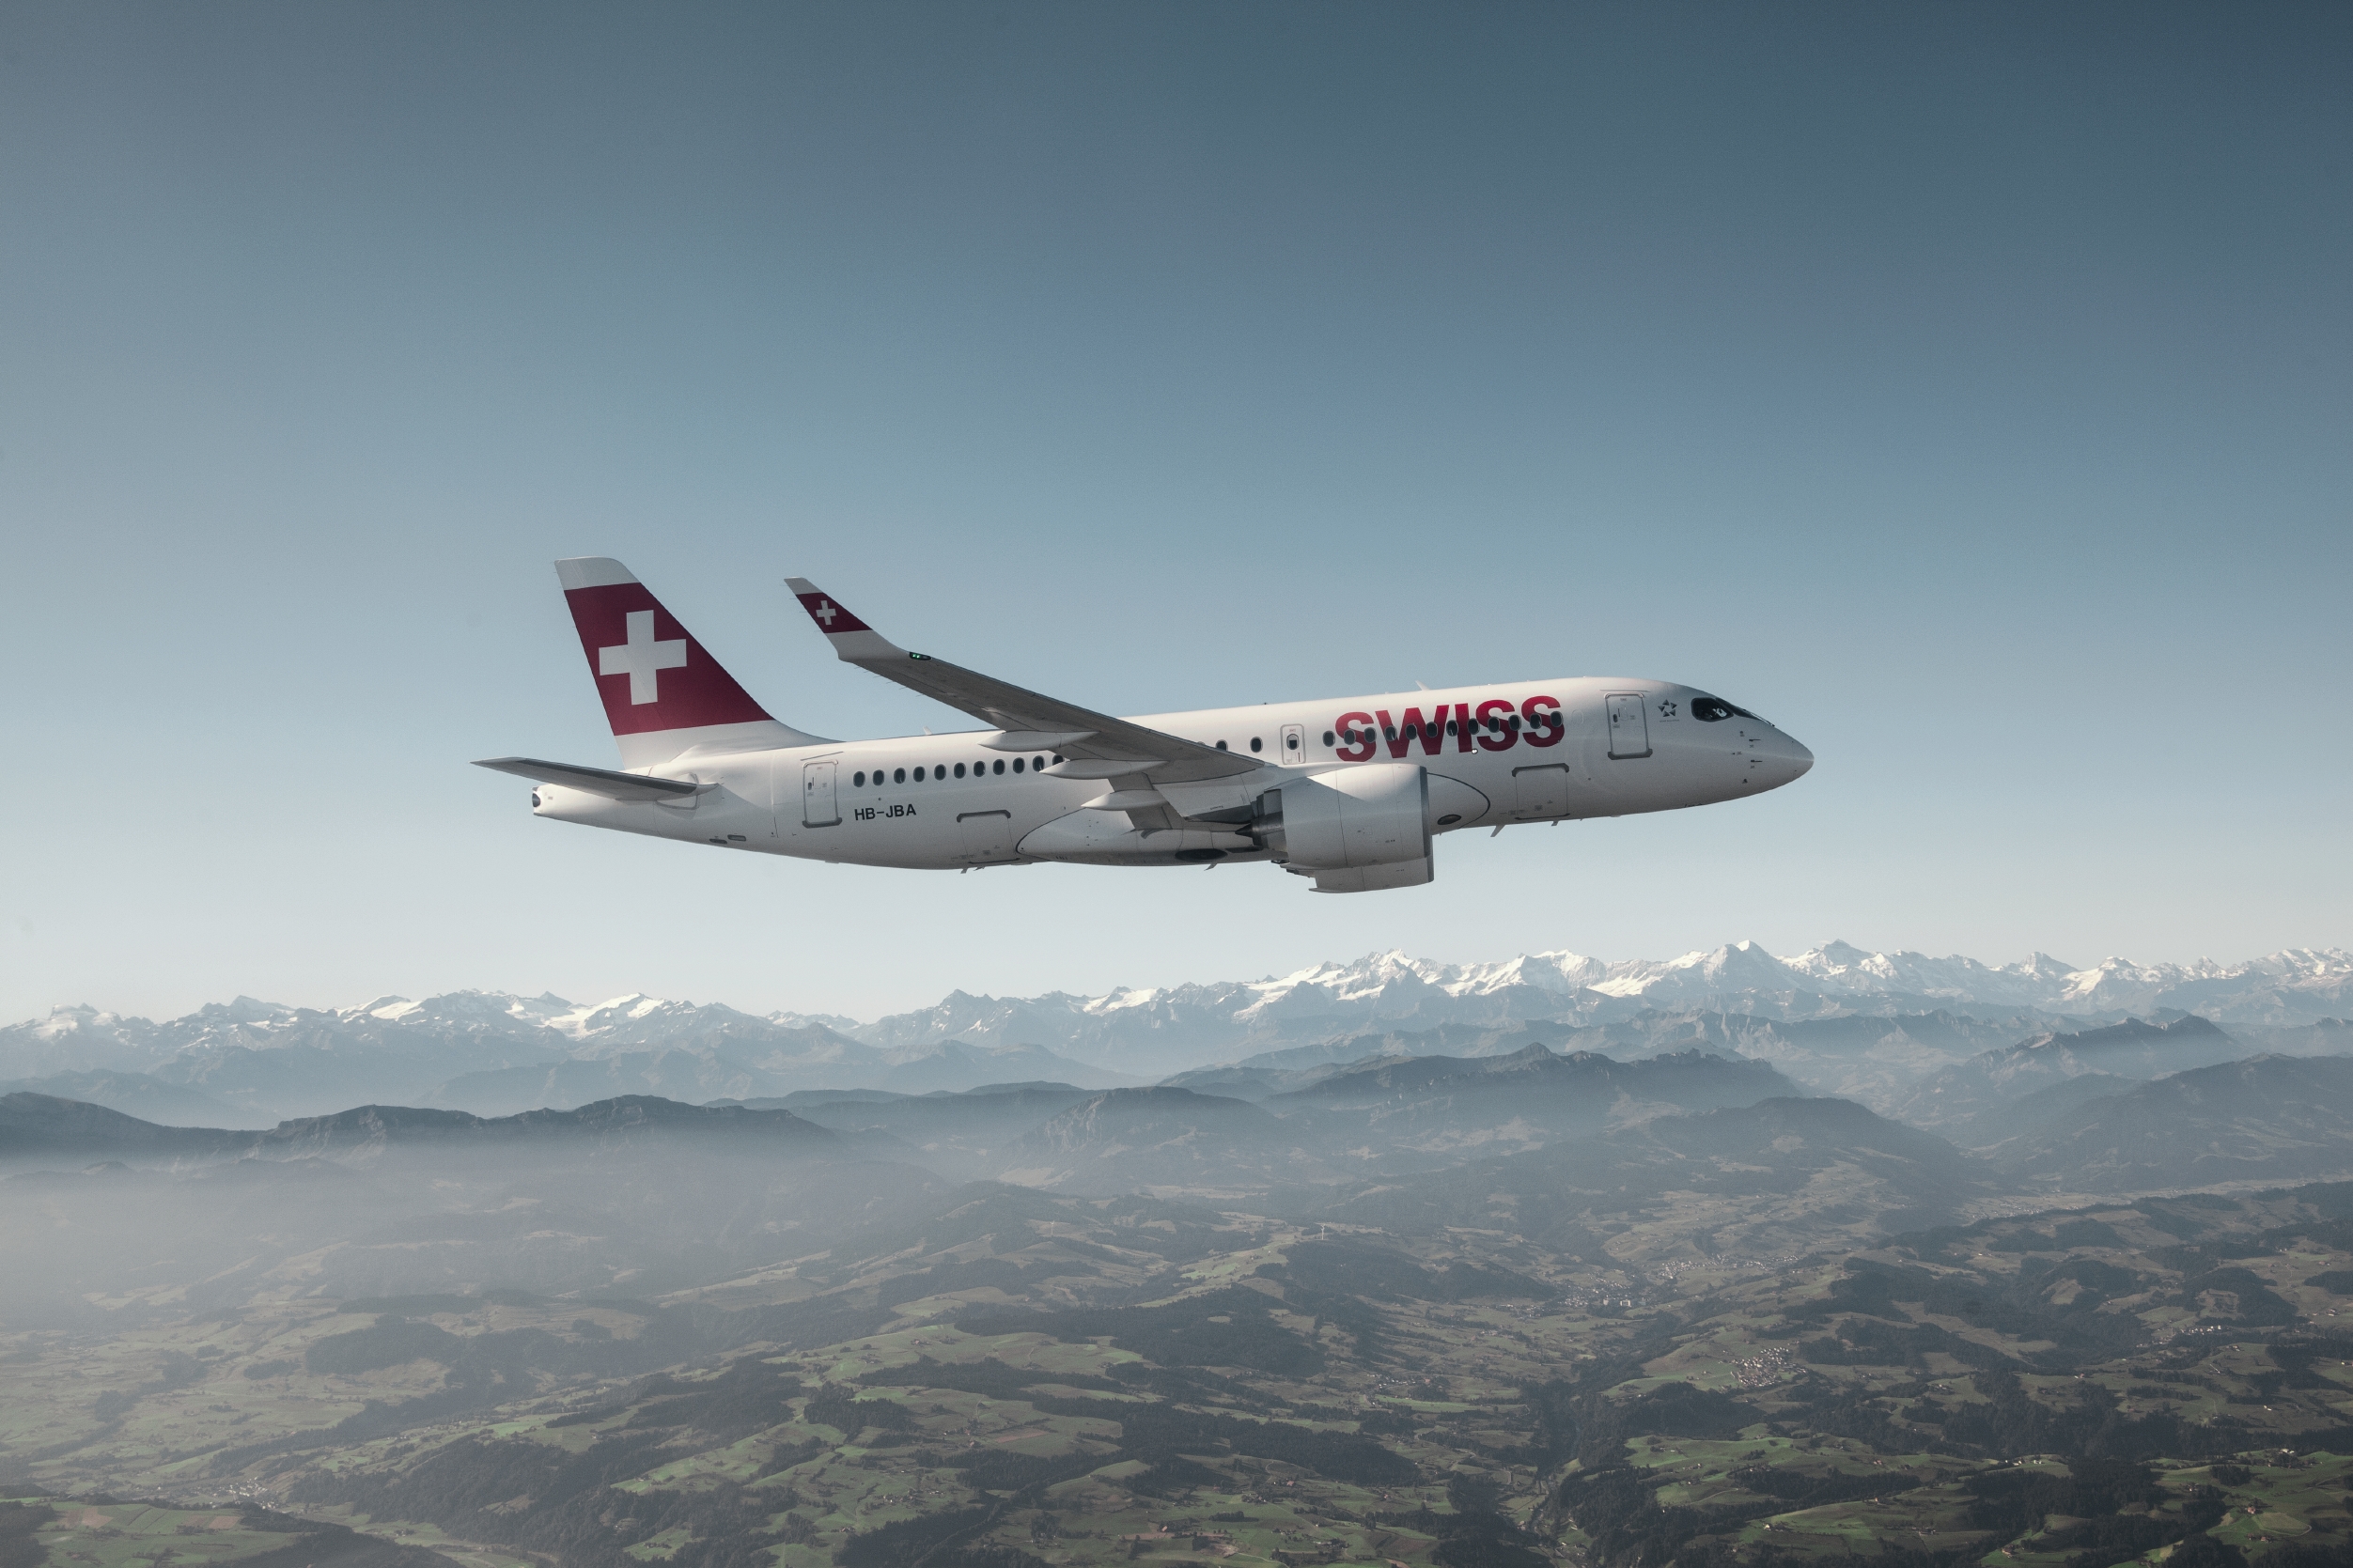 Swiss va relier Genève à Munich et Francfort